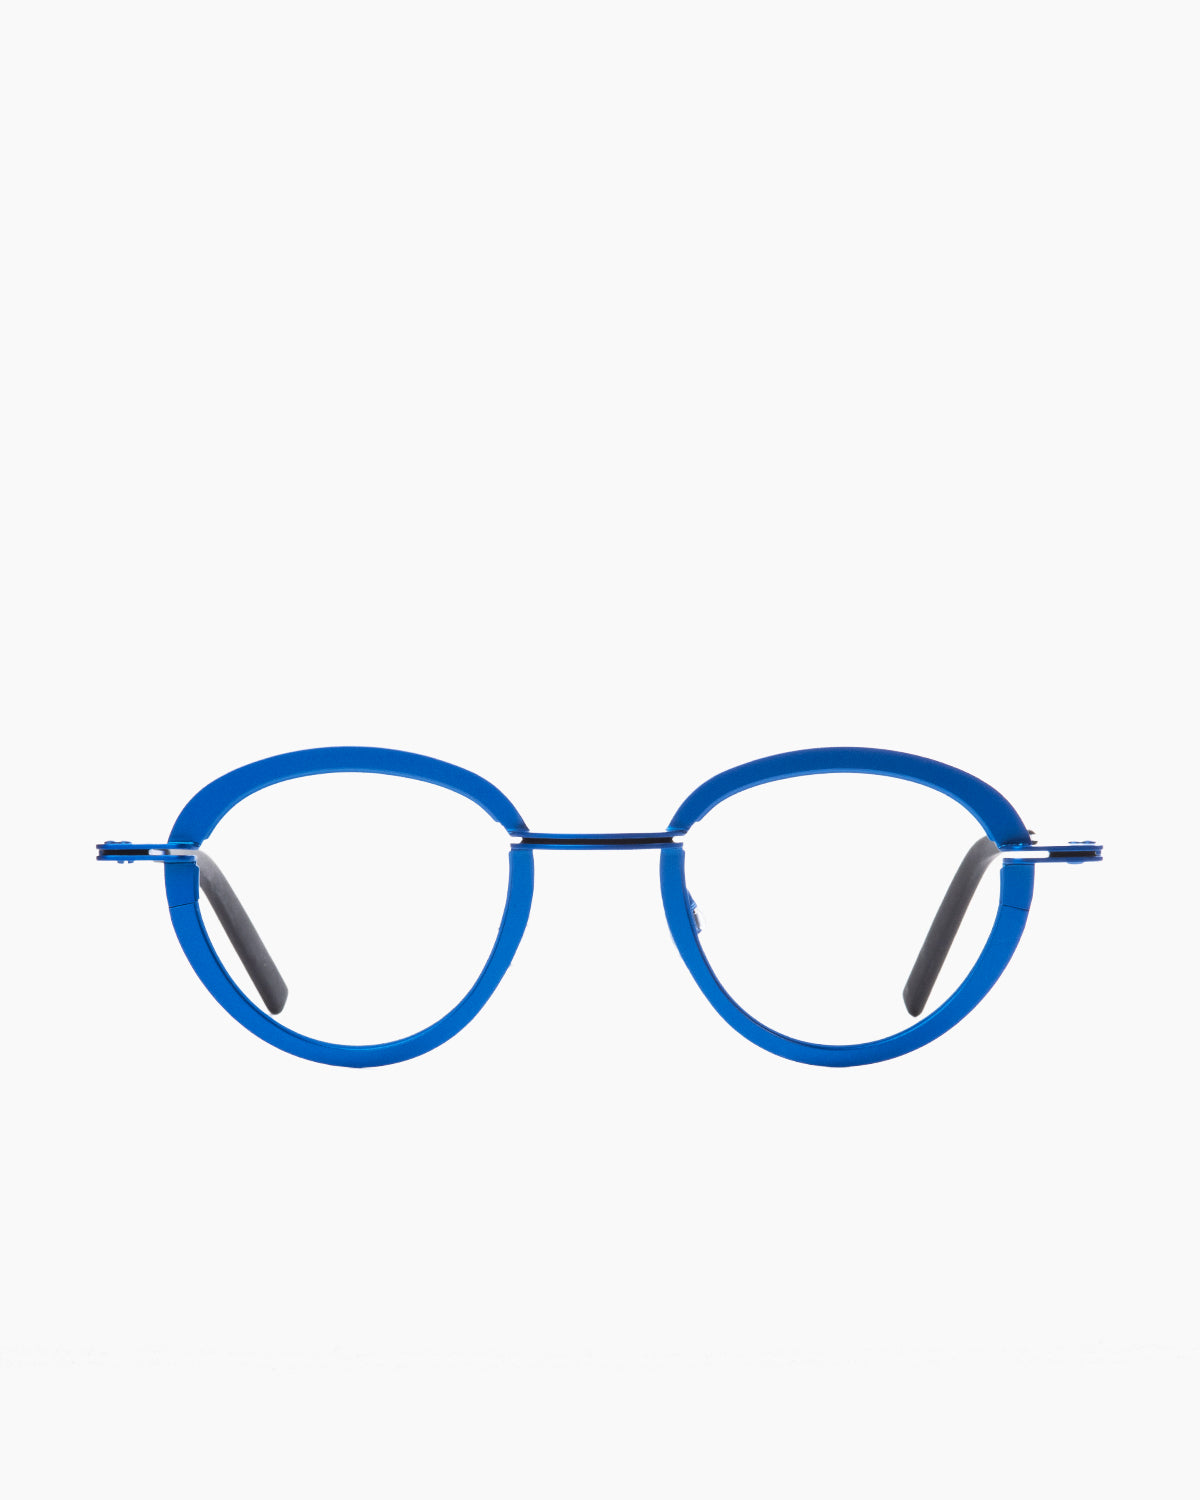 Theo - Sensational - 601 | Bar à lunettes:  Marie-Sophie Dion